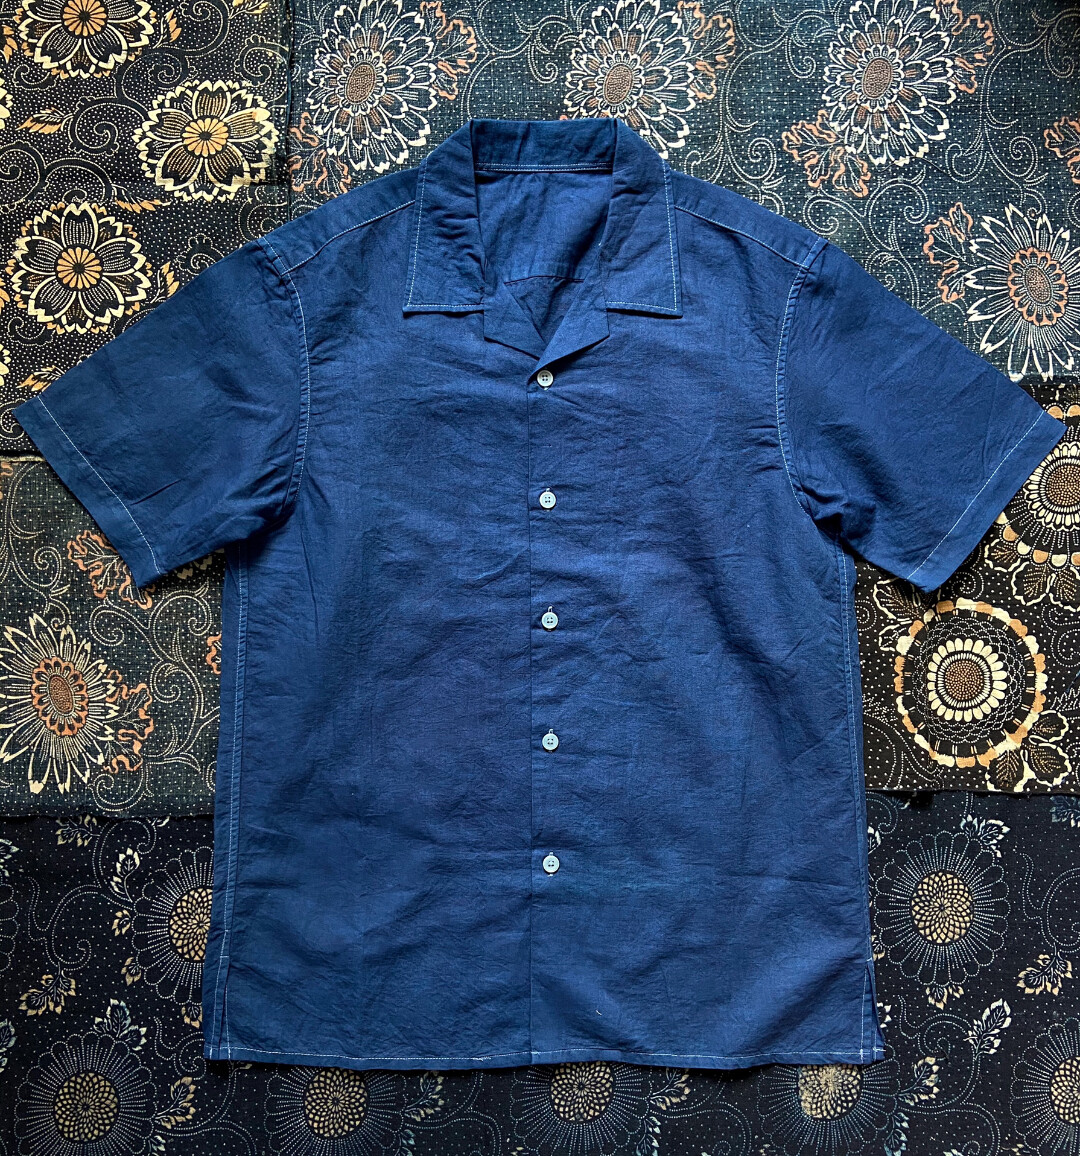 【220/全新】天然植物蓝染复古古巴领男短袖衬衫